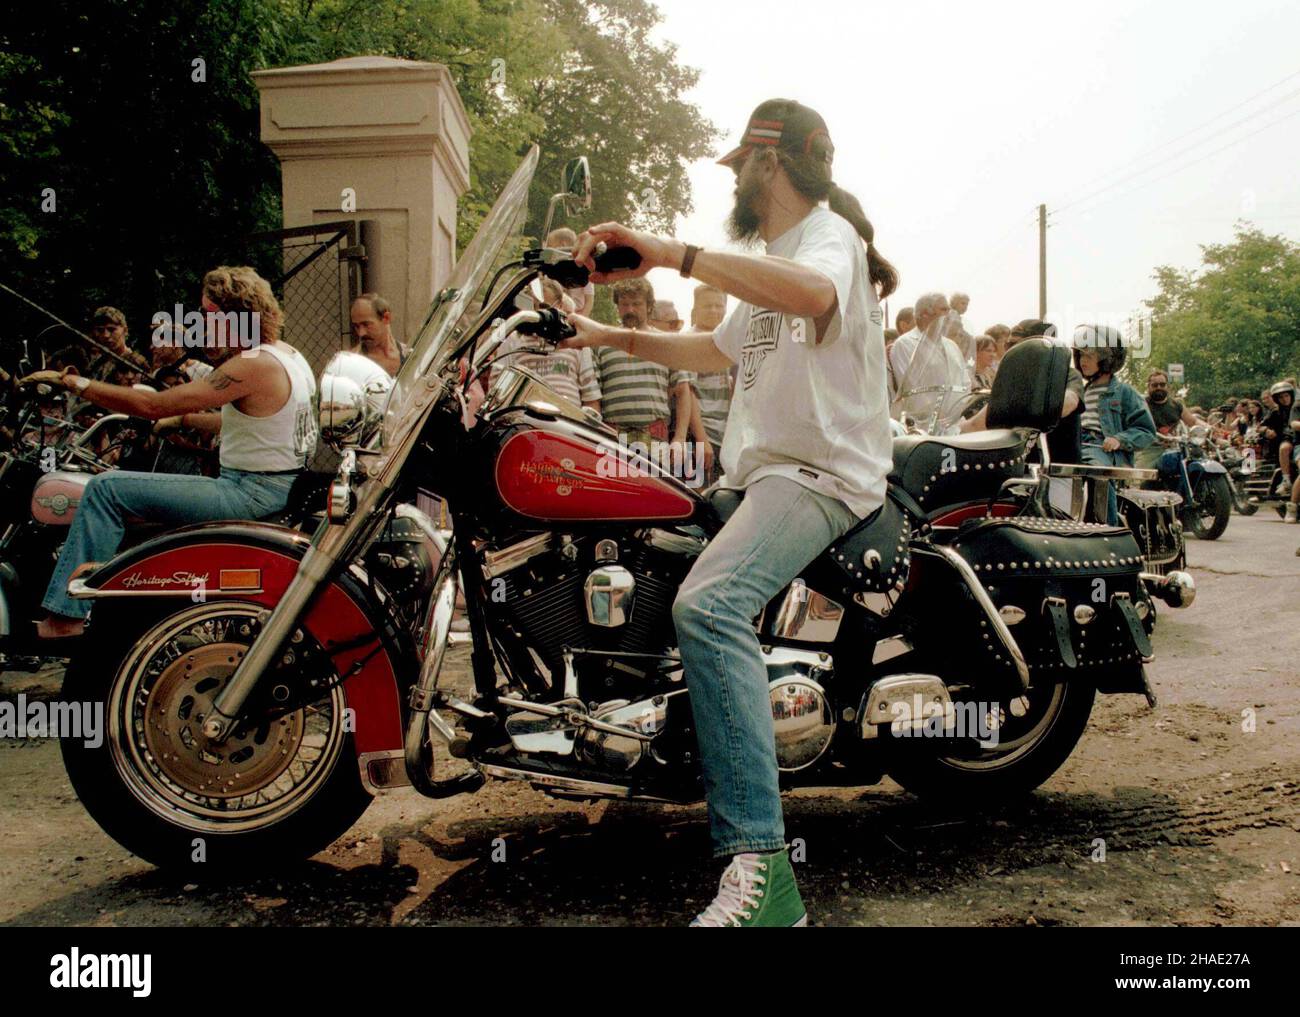 ¯nin, 15.07.1995. Mê¿czyzna jedzie na harley'u na Zlocie Motocykli - Harley-Davidson w ¯ninie (Kujawsko-Pomorskie). (kkk) PAP/Wojtek Szabelski Stock Photo